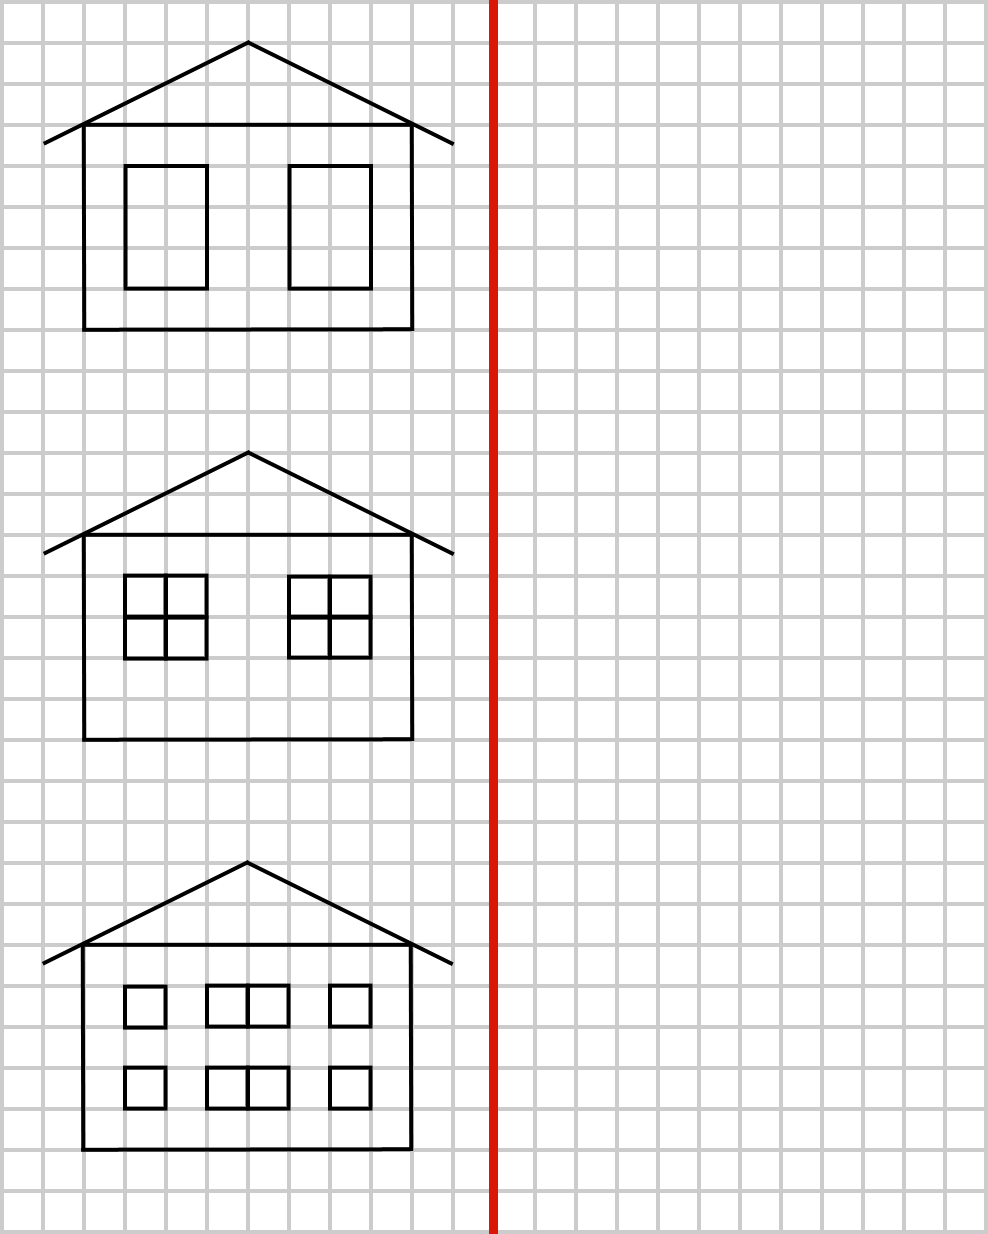 ZADANIE 3. Po prawej stronie narysuj takie same domki.